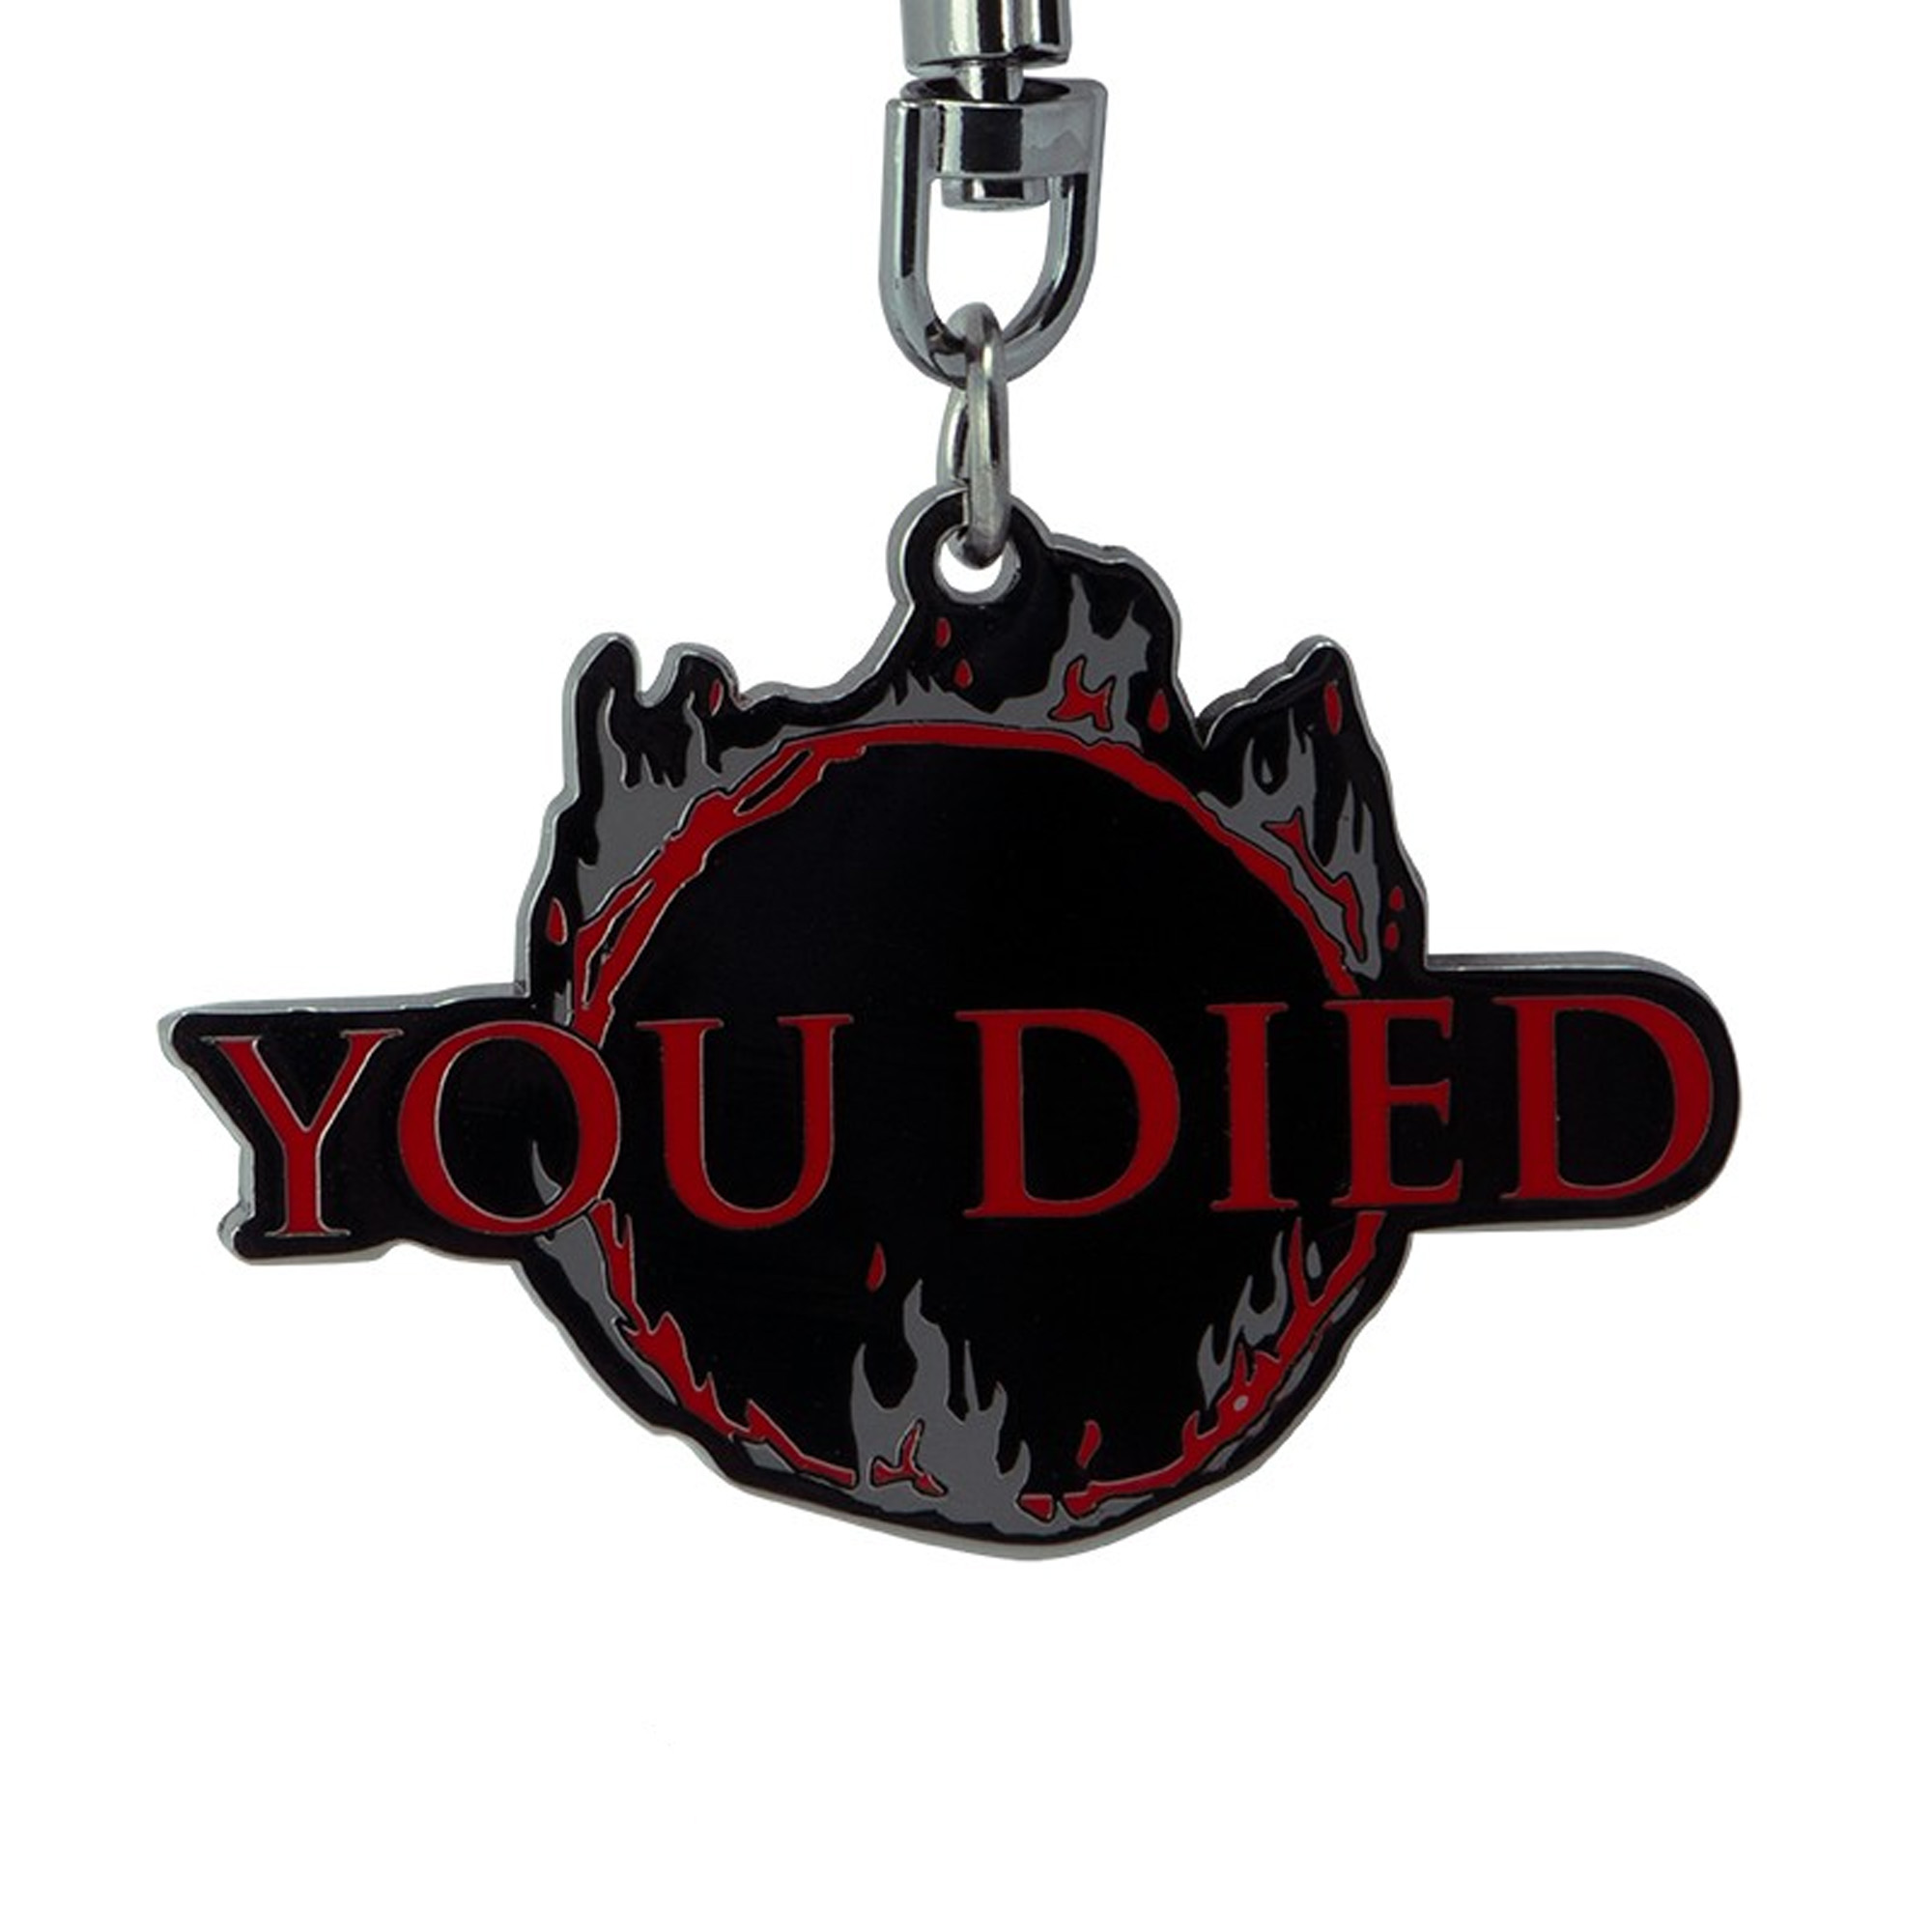 You Died Schlüsselanhänger - Dark Souls